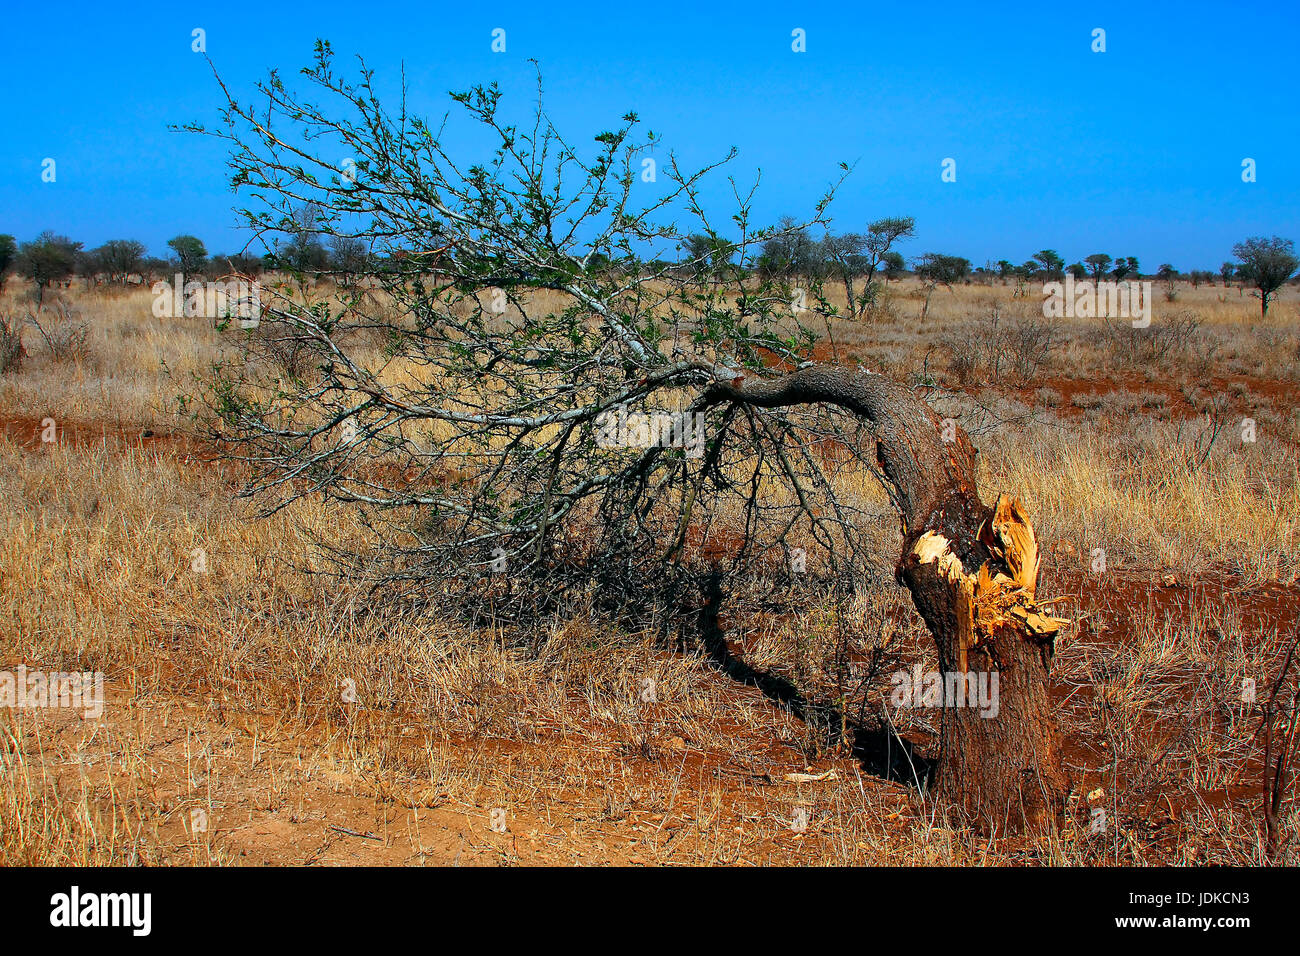 Arbre généalogique naufragé de décor - Afrique du Sud, Demolierter Baum dans Landschaft - Suedafrika Banque D'Images